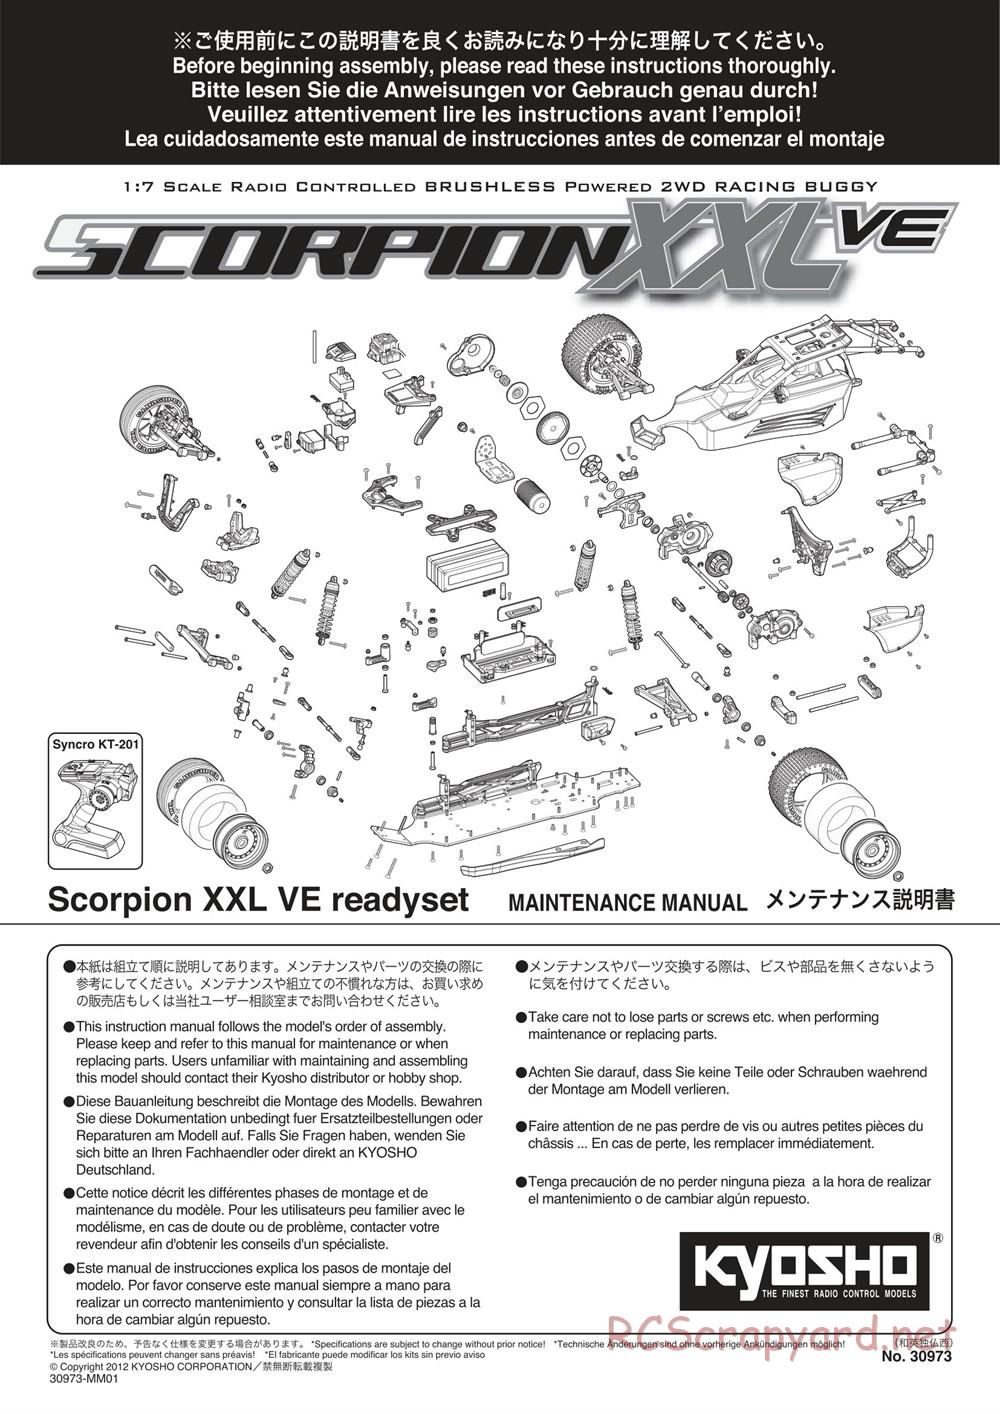 Kyosho - Scorpion XXL VE - Manual - Page 1